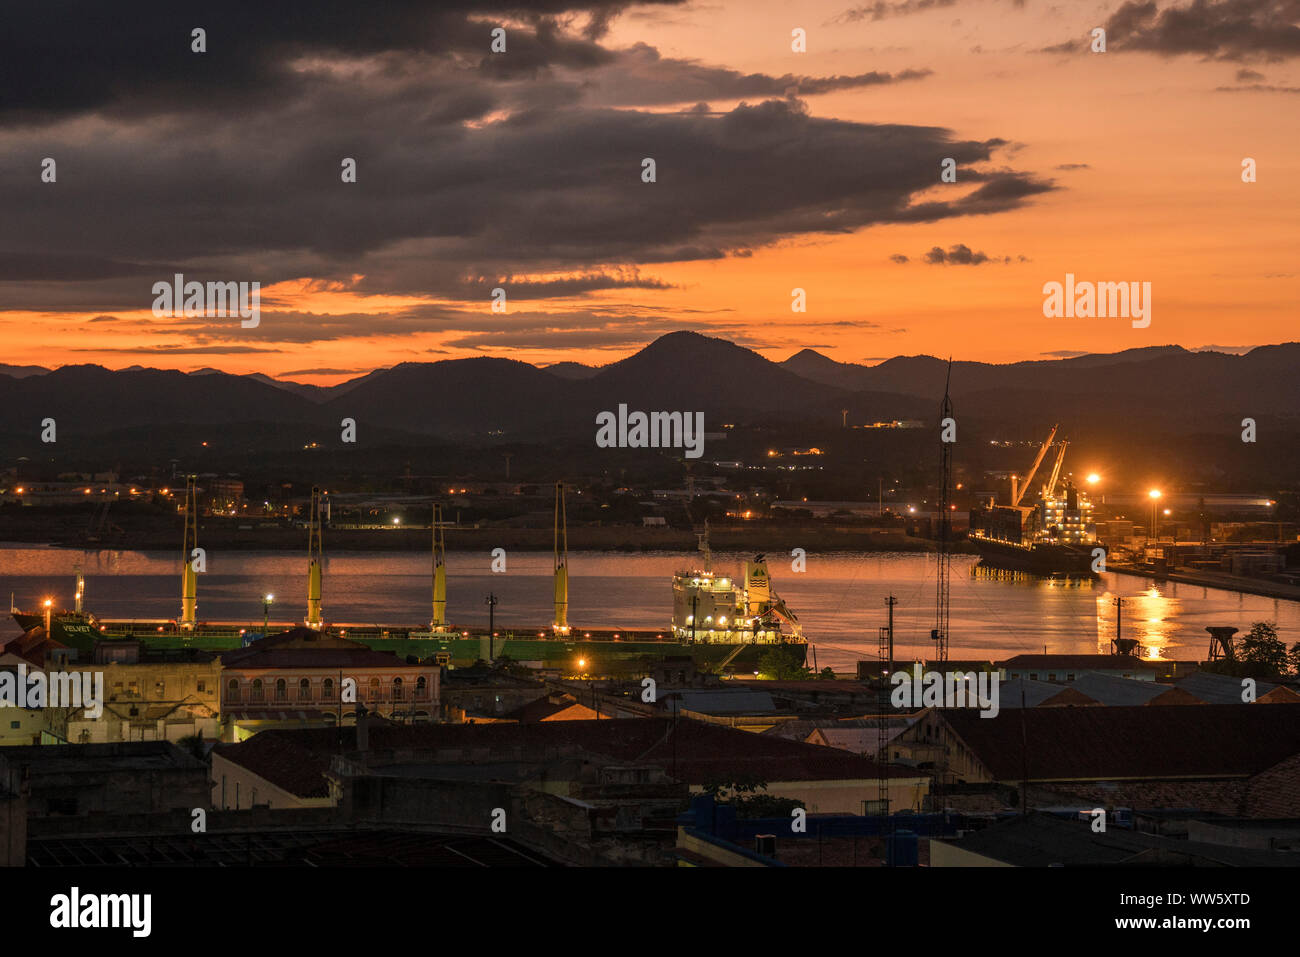 Harbour of Santiago de Cuba at sundown, Cuba Stock Photo